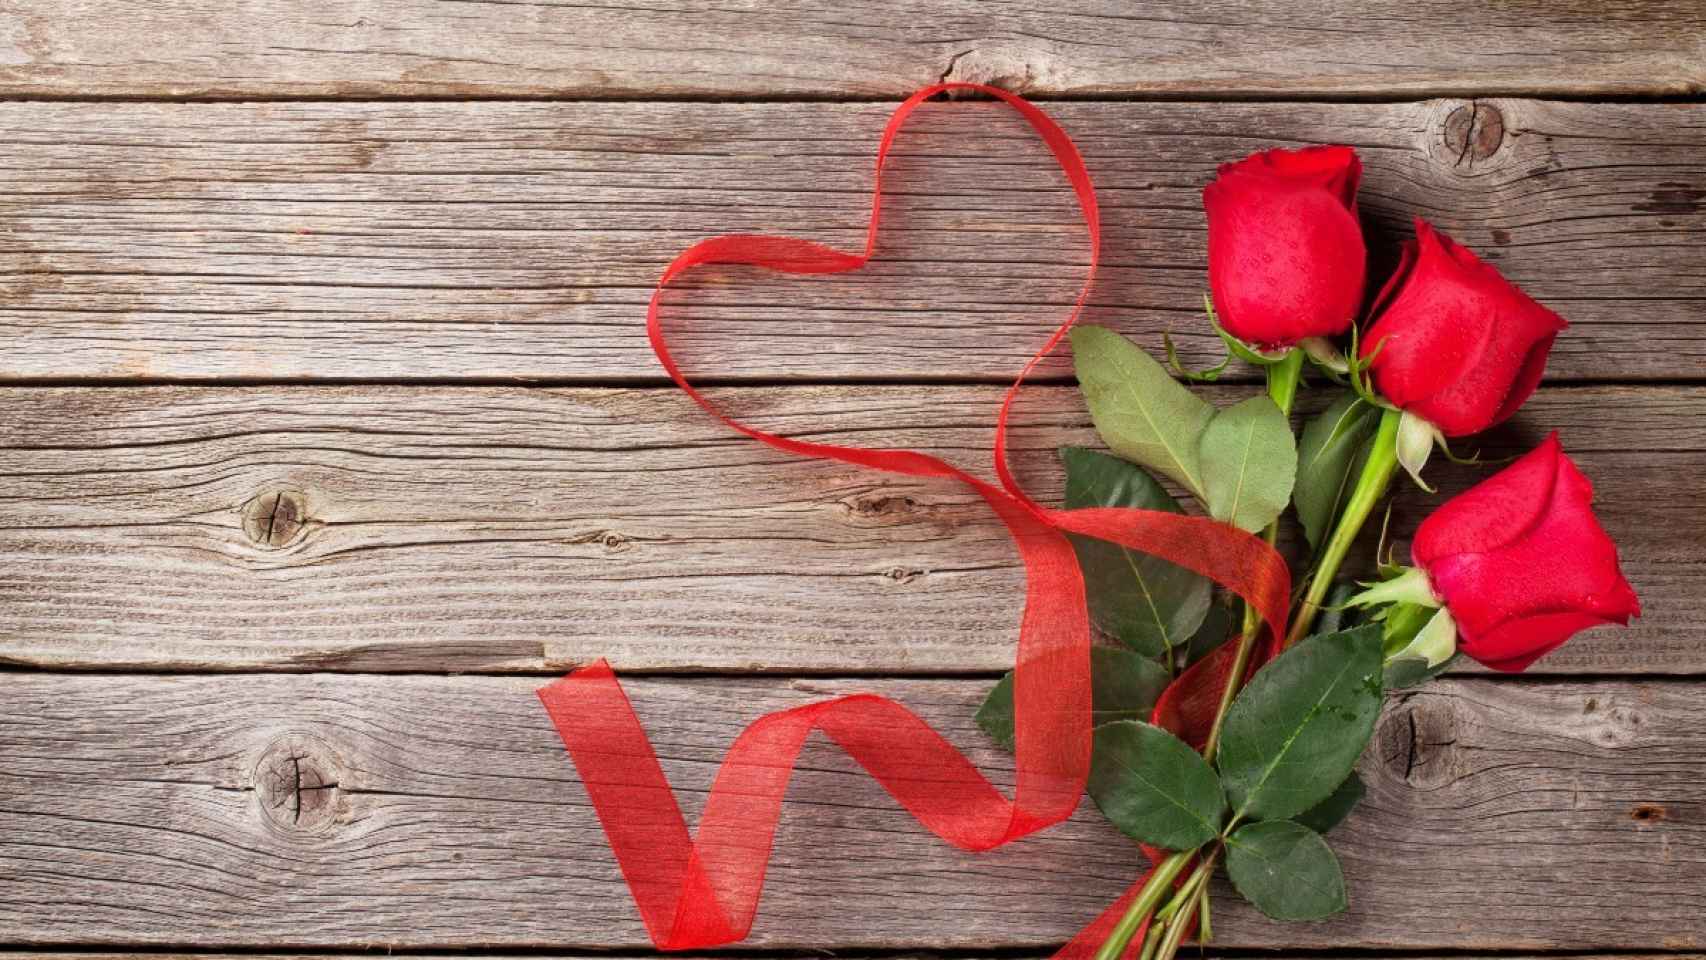 San Valentín 2022: ¿No sabes qué regalar por San Valentín? Aquí